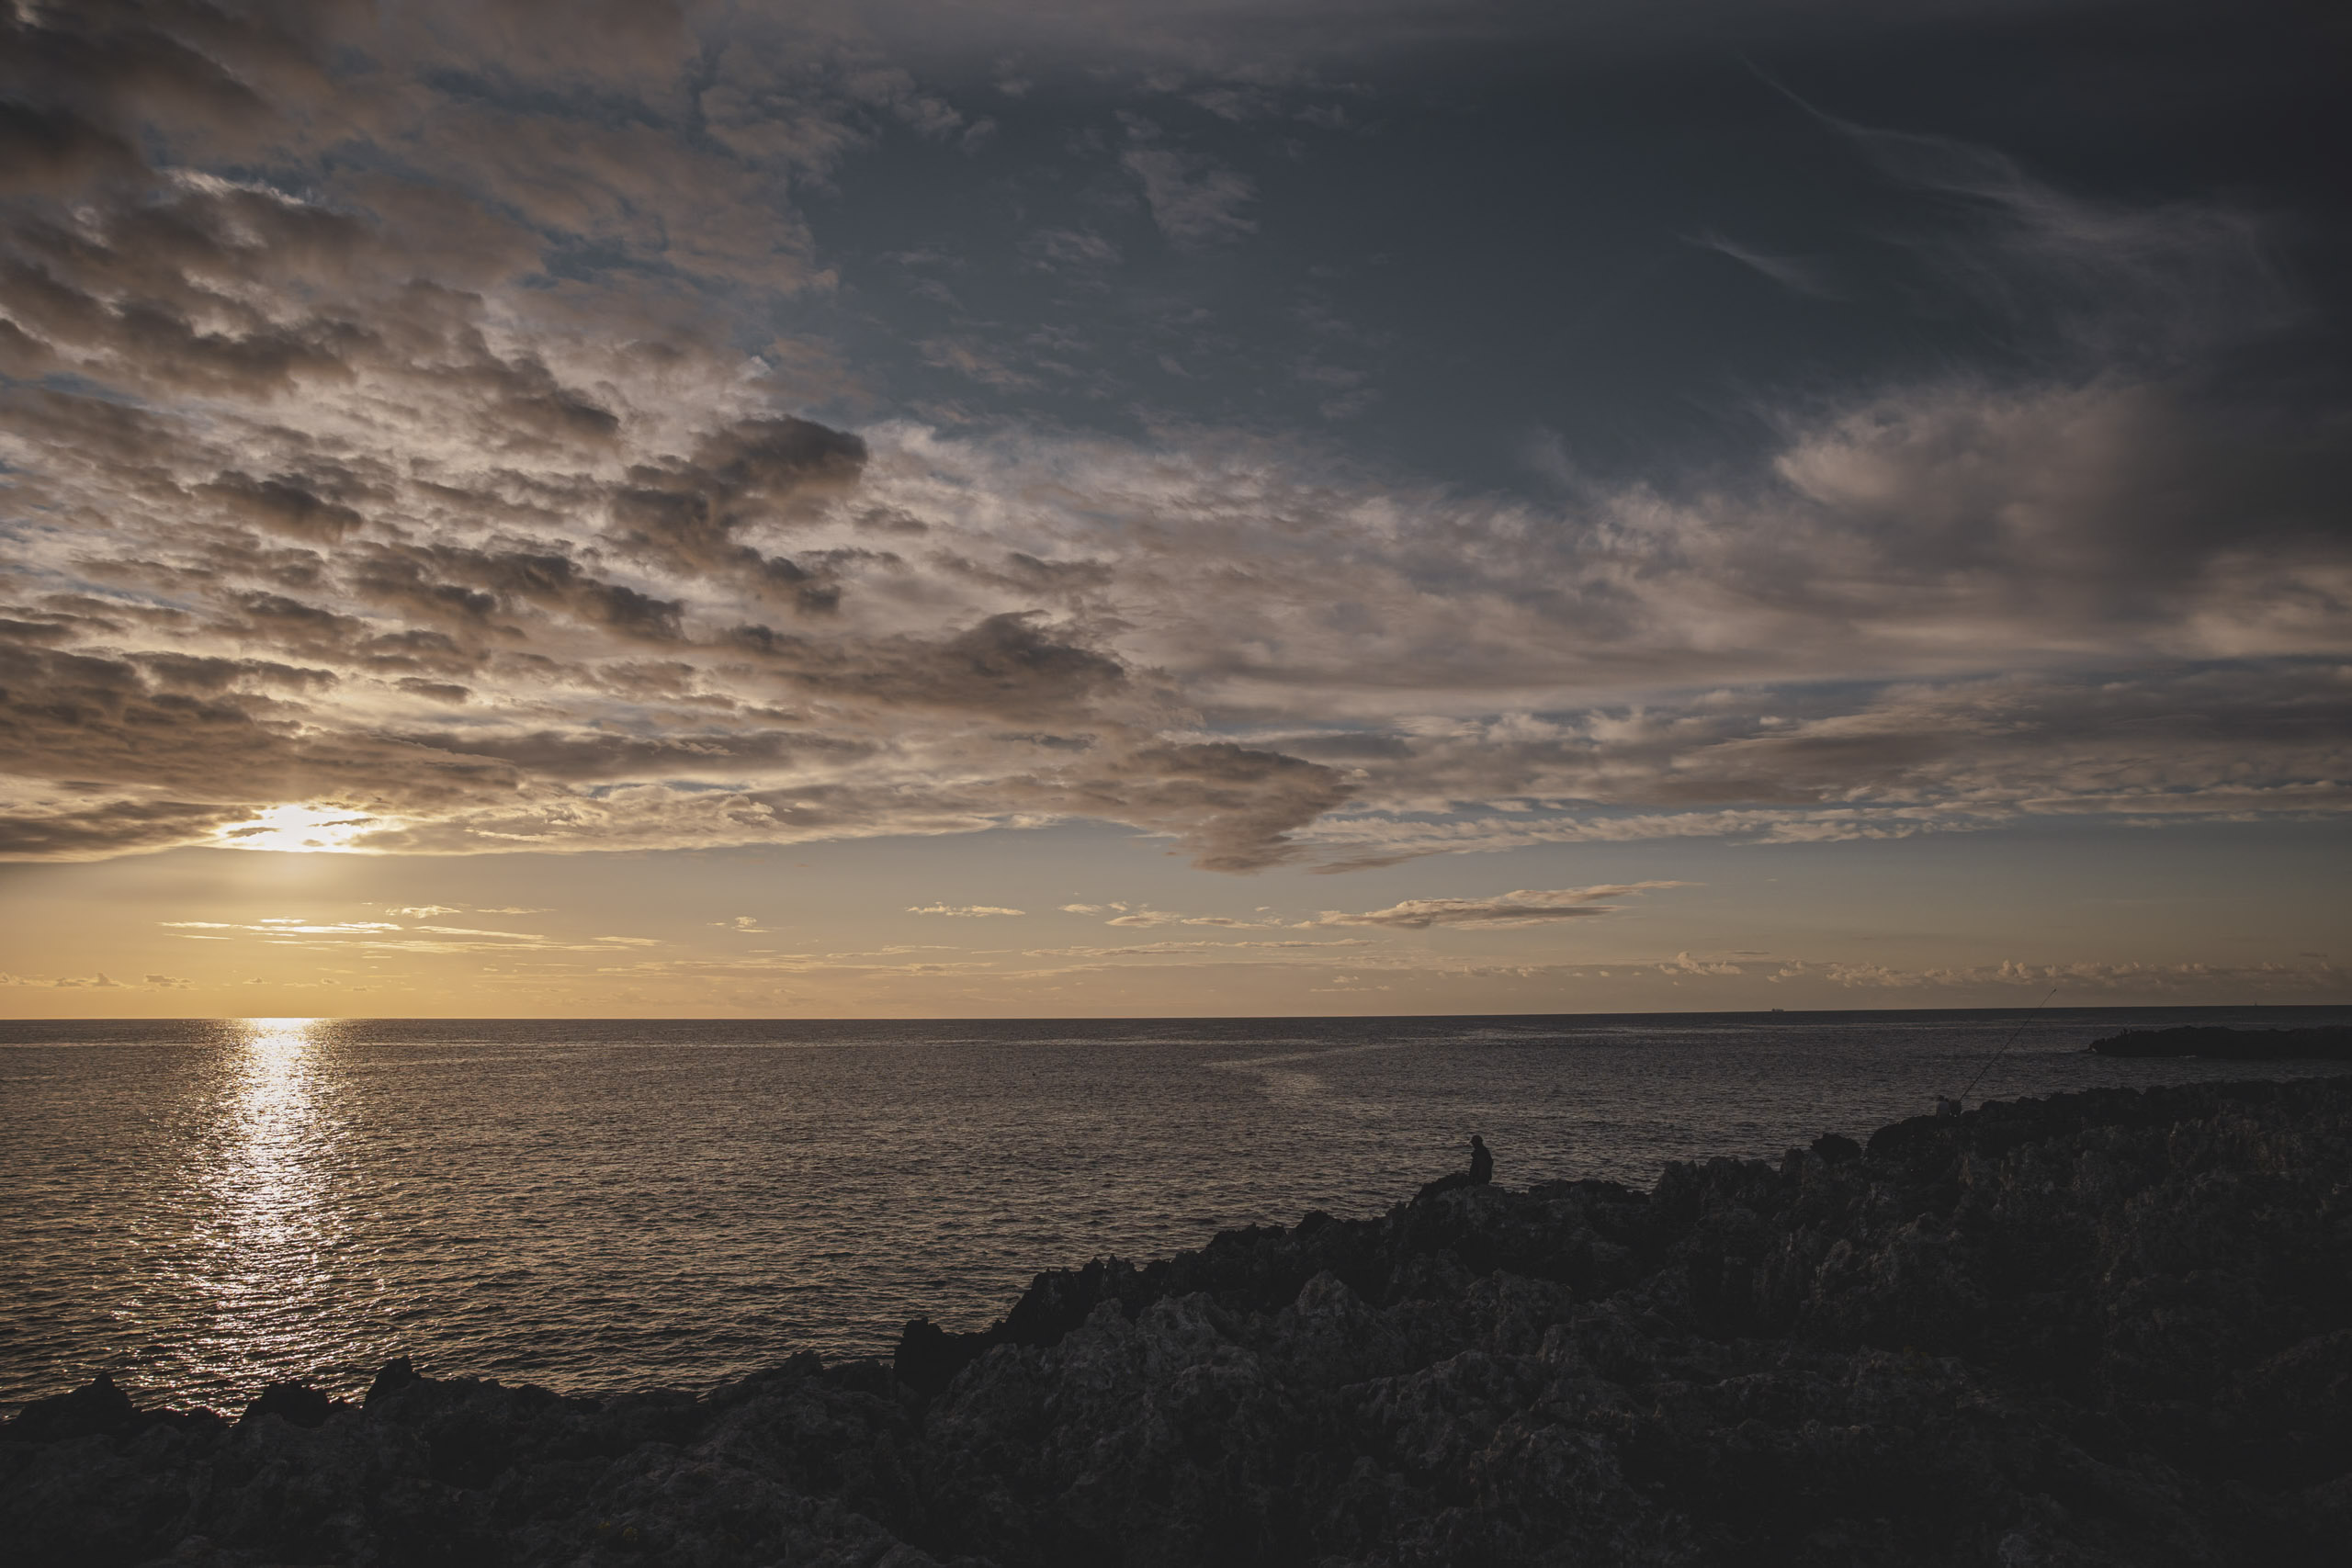 Ein ruhiger Sonnenuntergang über dem Meer, von einer felsigen Küste aus betrachtet. Der Himmel ist mit Wolken übersät, die das warme Sonnenlicht reflektieren. Am Wasserrand steht eine einsame Gestalt als Silhouette. © Fotografie Tomas Rodriguez